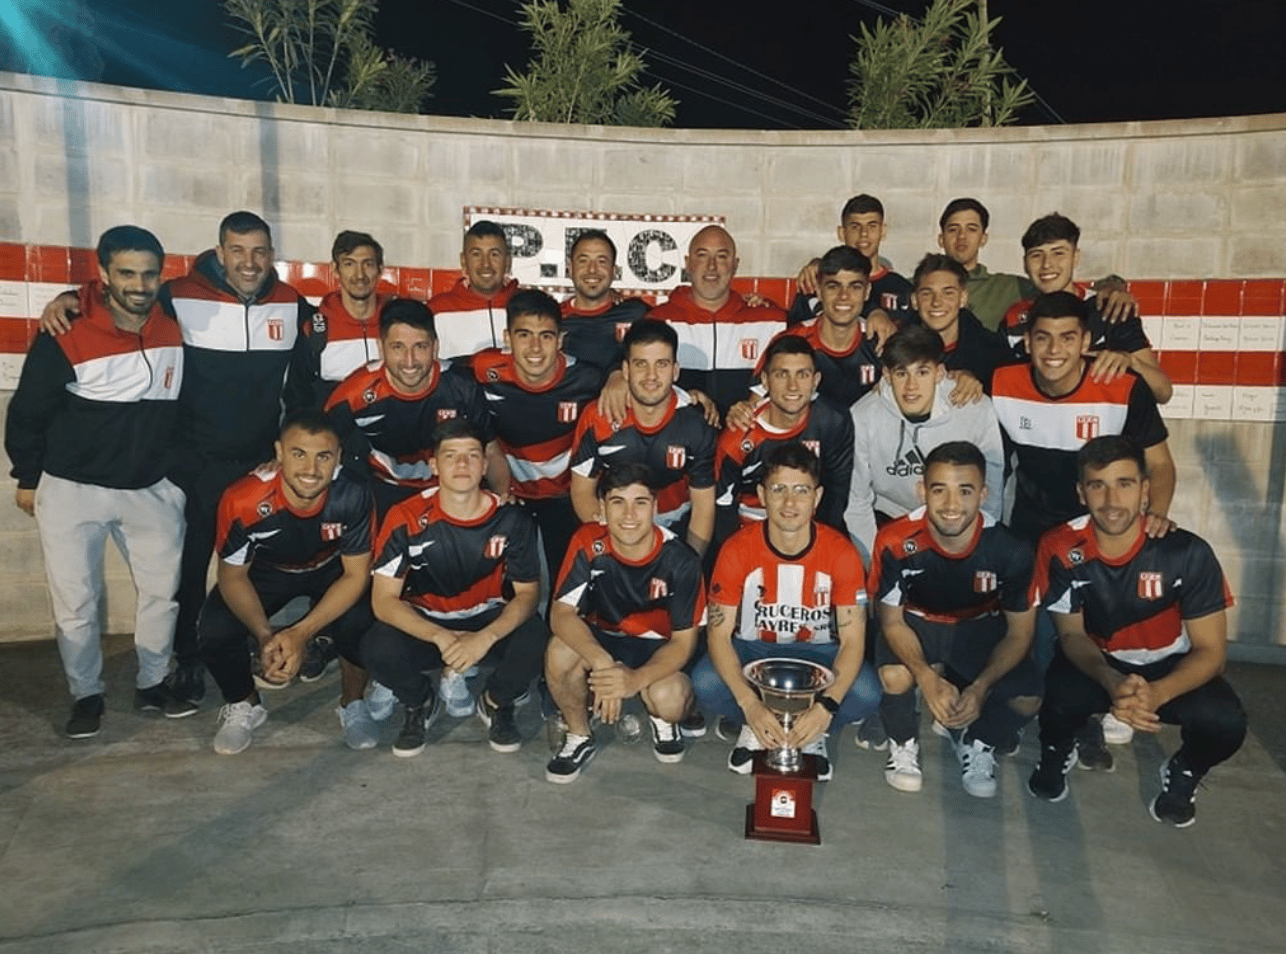 Fútbol: tras el título, el balance de Paraná campeón